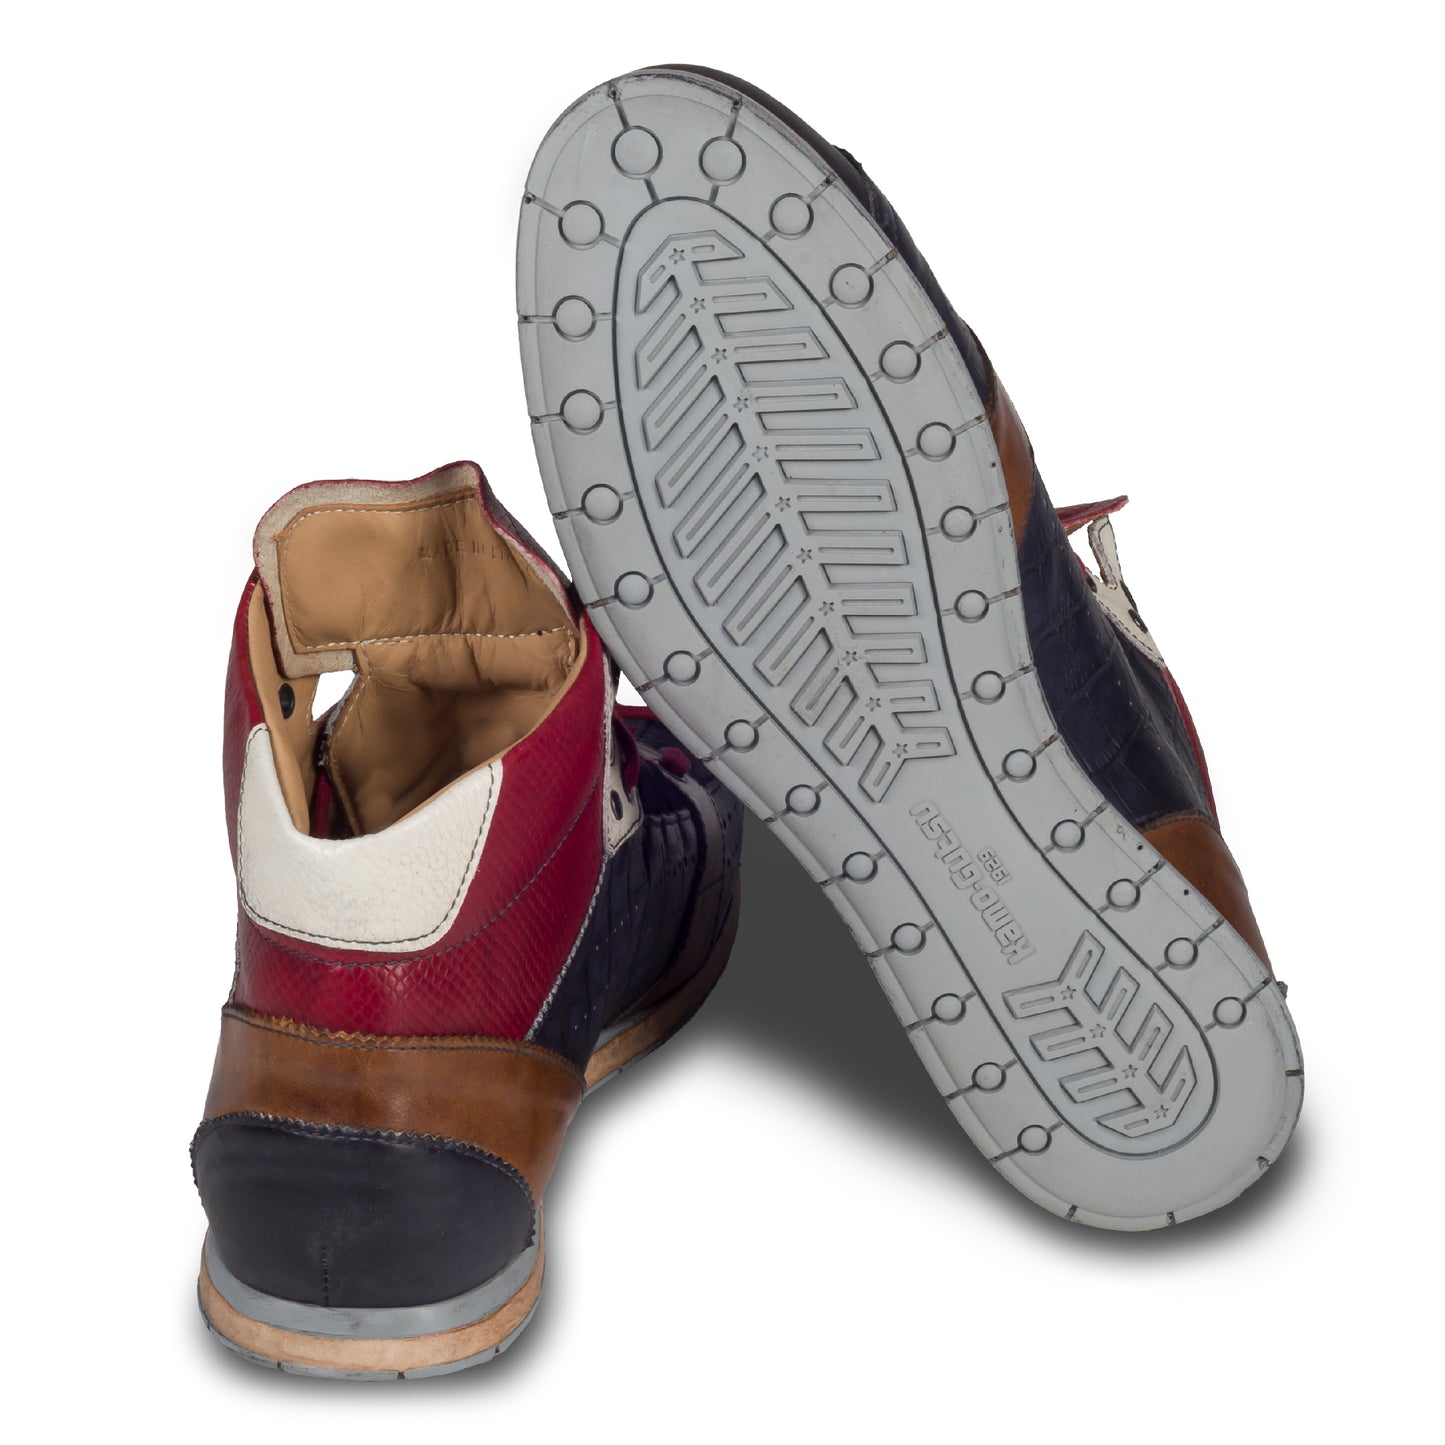 KAMO-GUTSU Italienischer Herren Leder Sneaker Stiefel, blau rot braun, Retro-Optik, Modell TIFO-105 navy mamba rosso. Handgefertigt. Ansicht der Ferse und Sohlenunterseite.